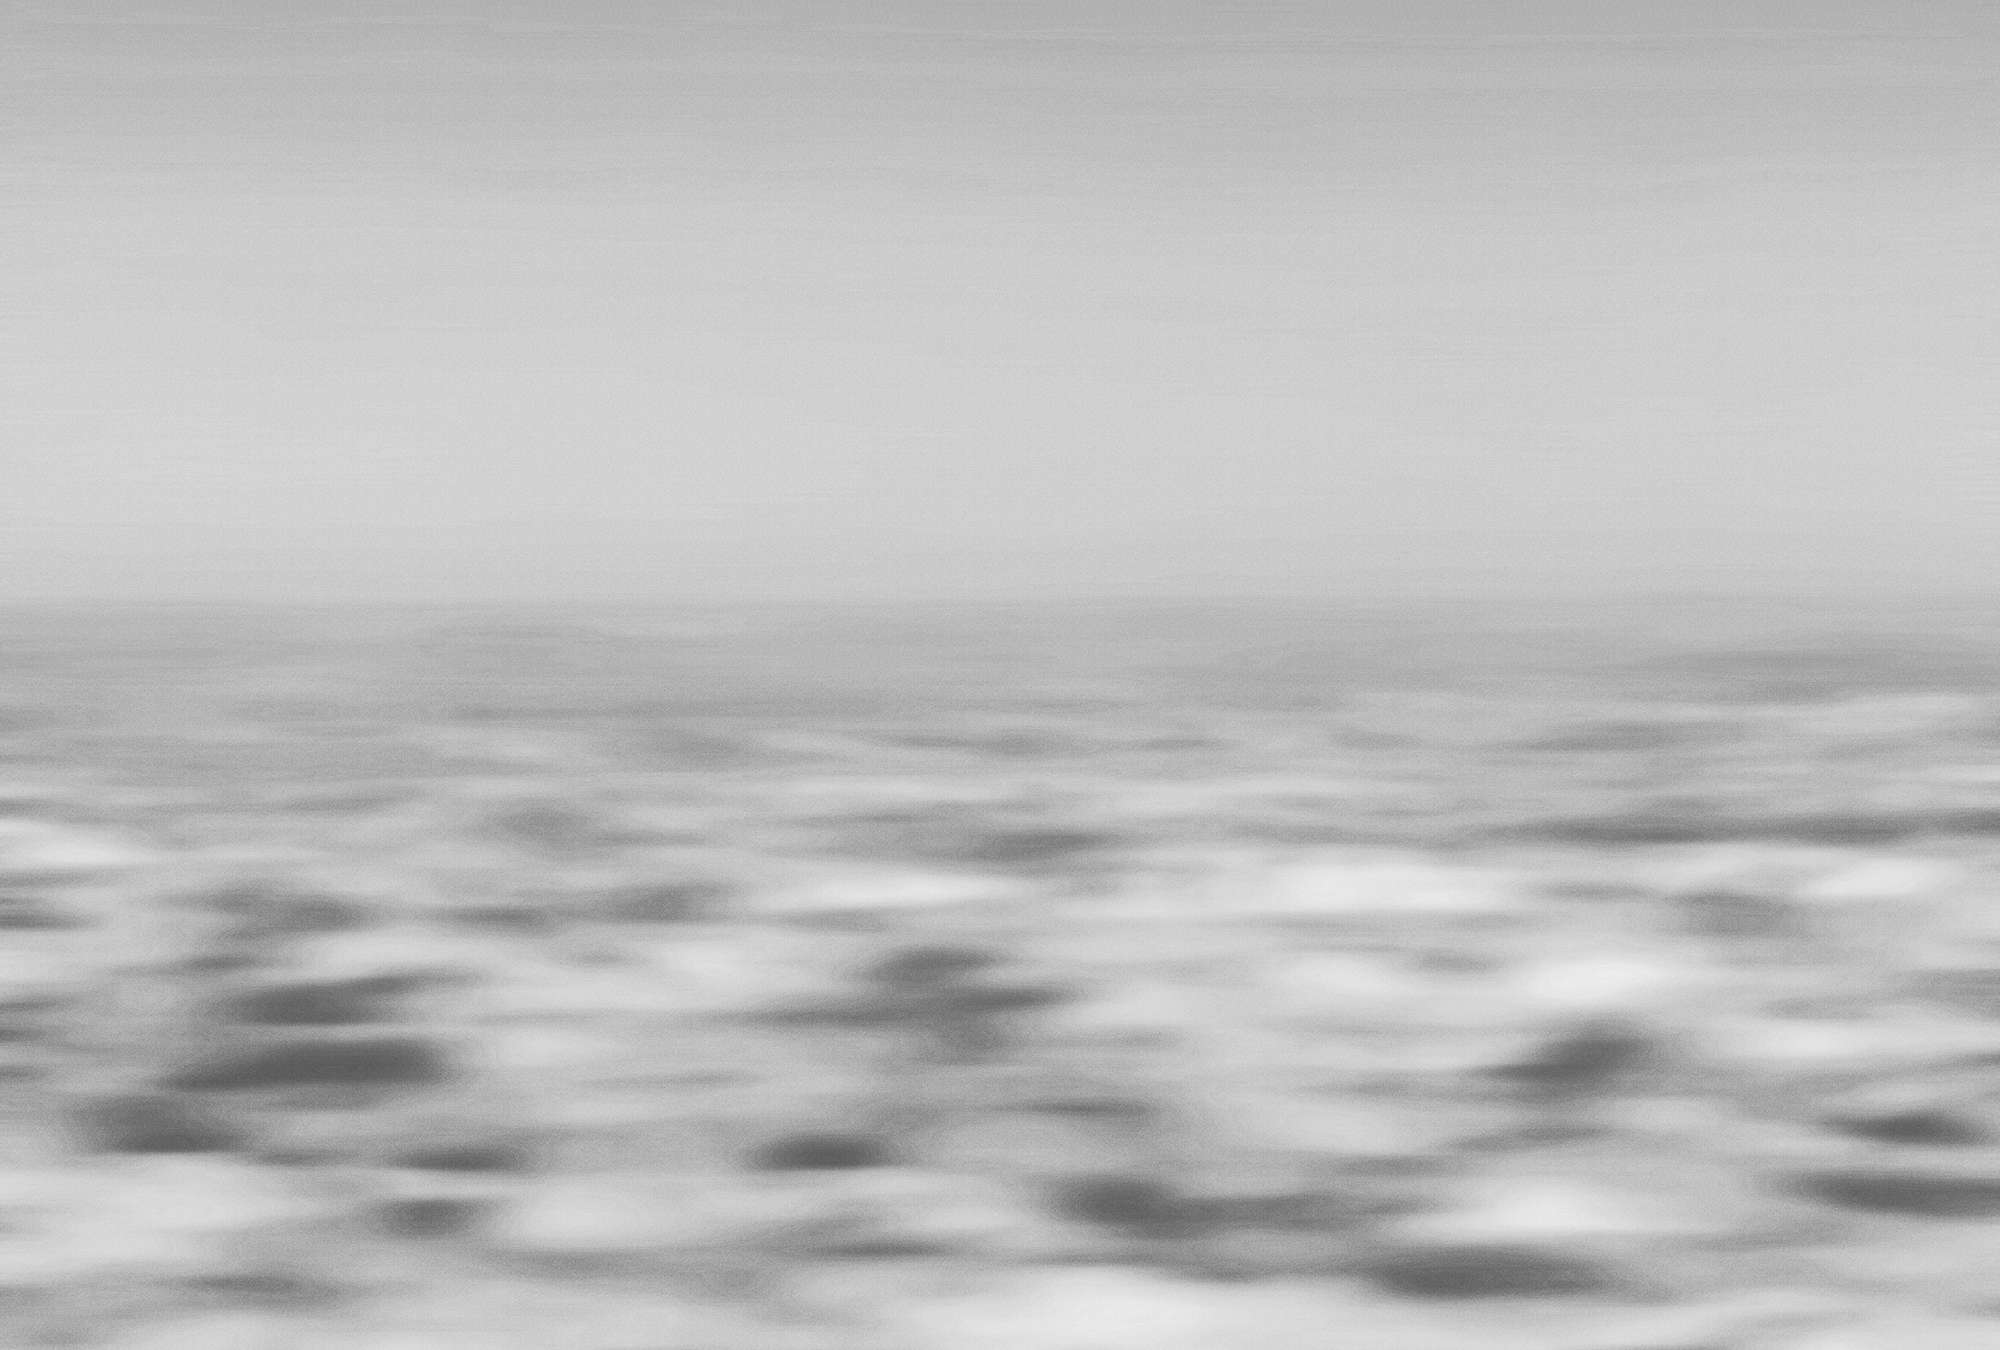             Fototapete maritim & abstrakt, Meer & Wellen – Grau, Weiß
        